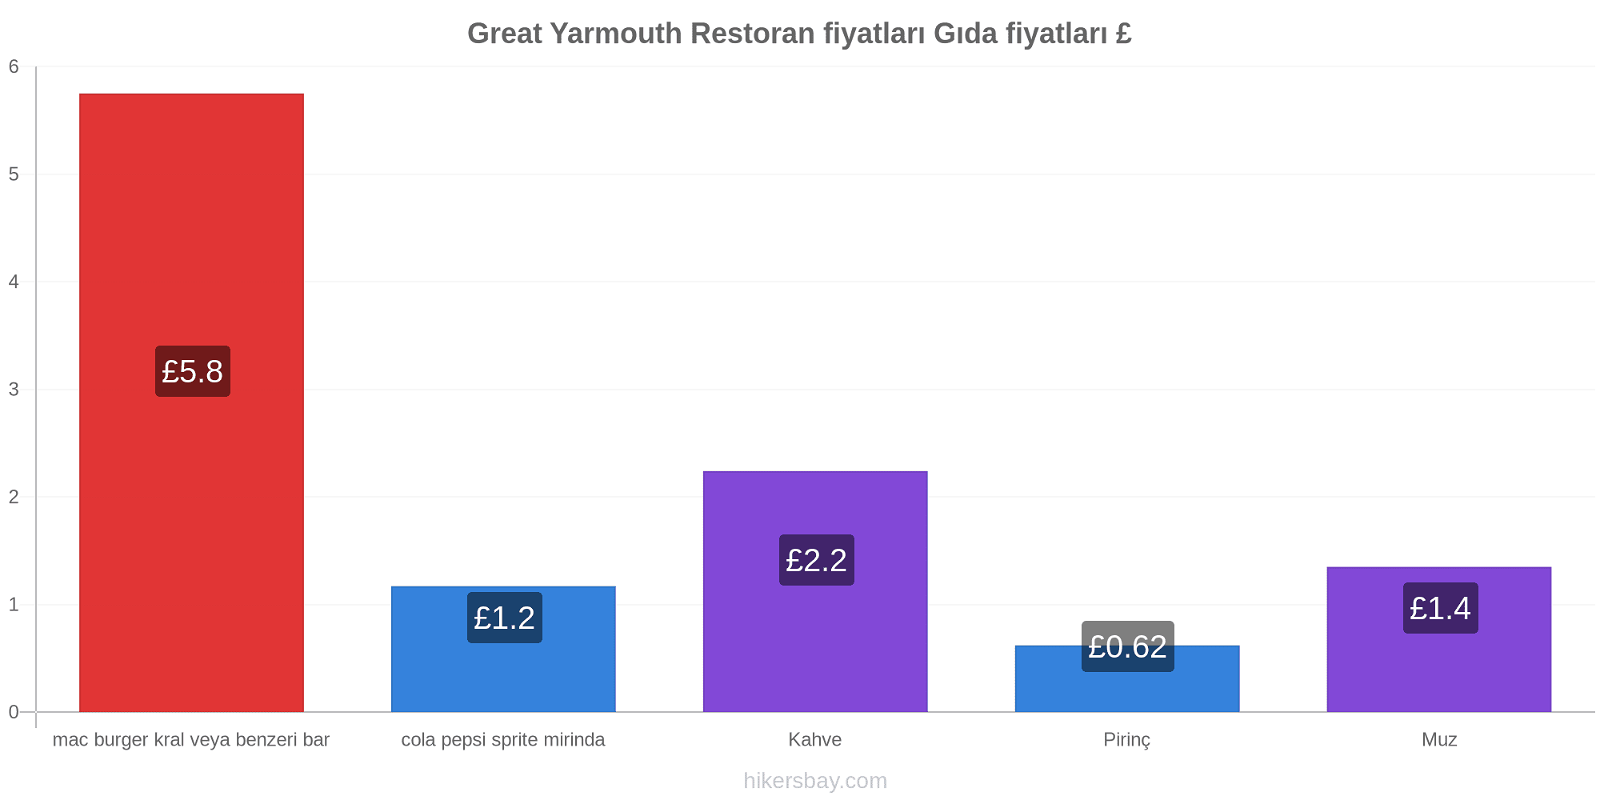 Great Yarmouth fiyat değişiklikleri hikersbay.com